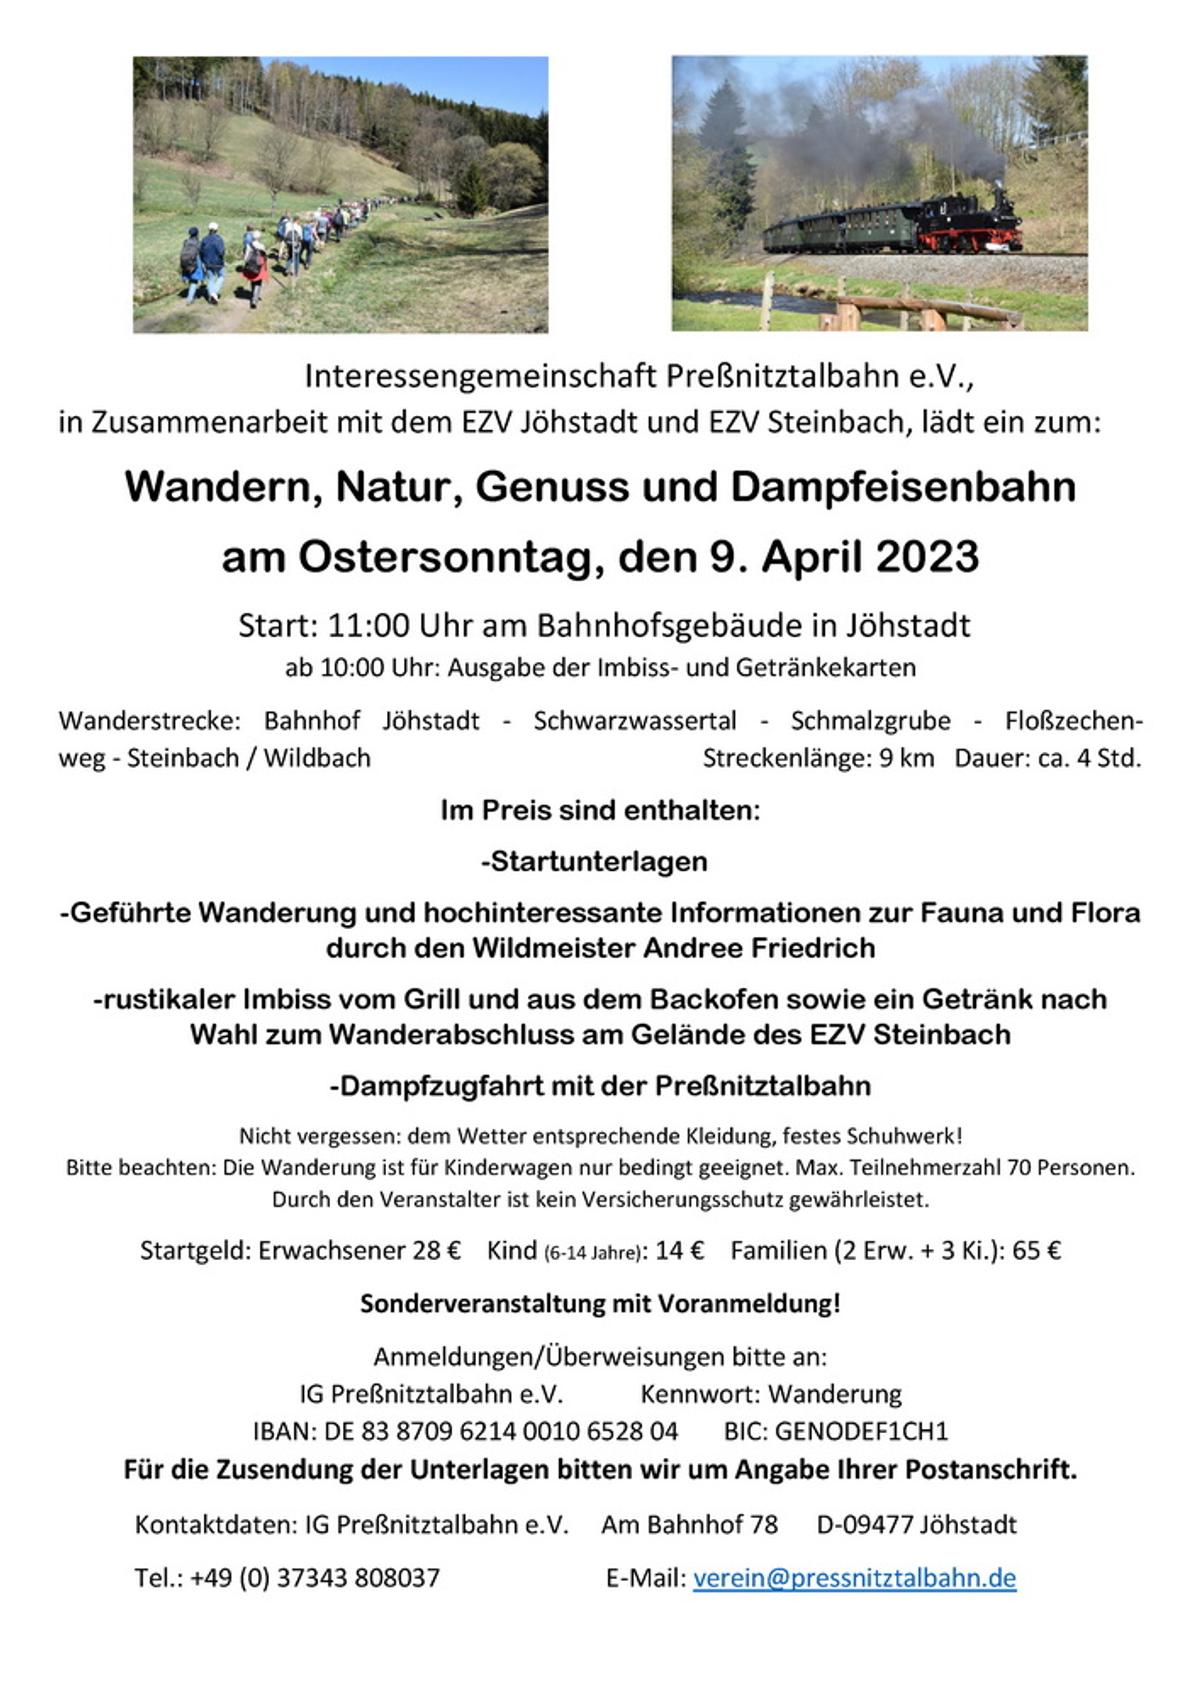 Veranstaltung „Wandern, Natur, Genuss und Dampfeisenbahn“ am Ostersonntag, 9. April 2023